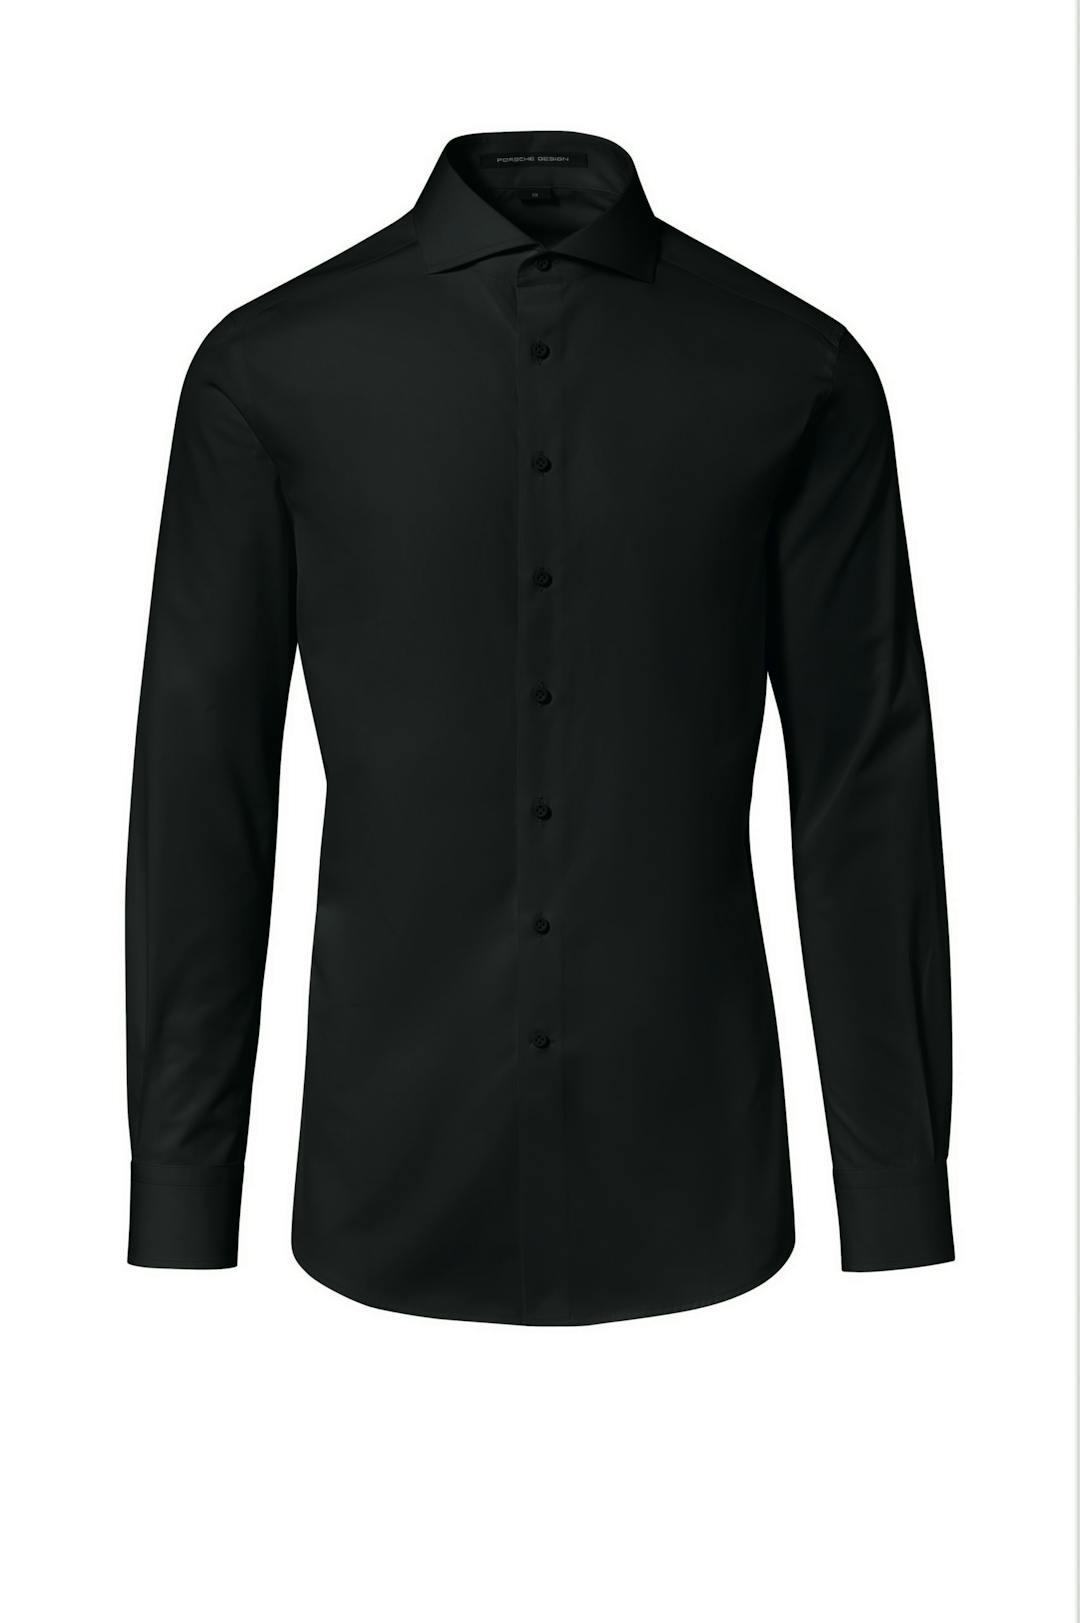 Porsche Design_SS19 Business Shirt Slimfit FRO jet black_145,00€